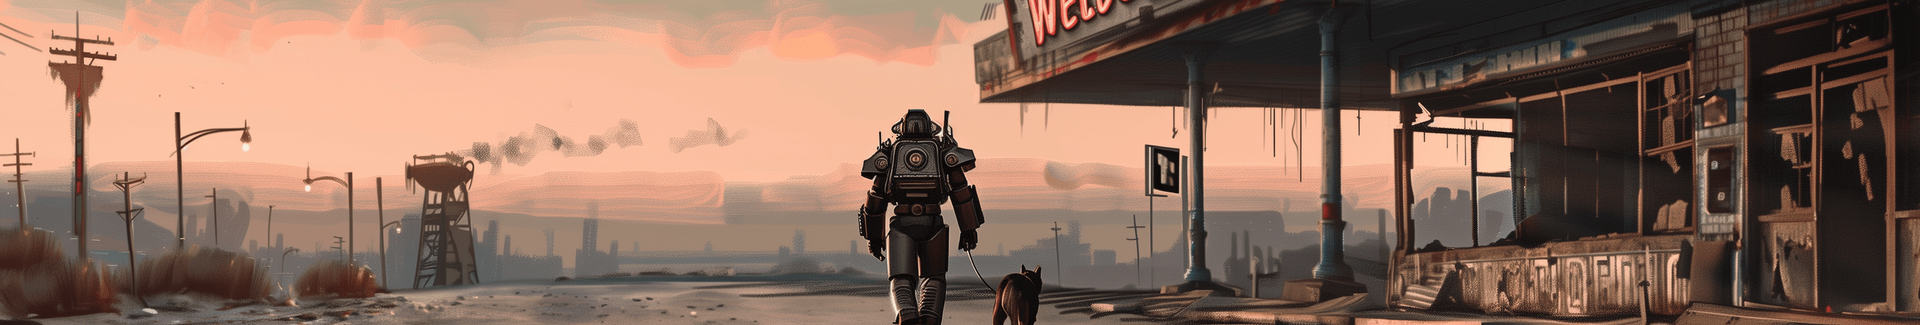 Acheter des objets pour Fallout 76 - FO76 Item Marketplace